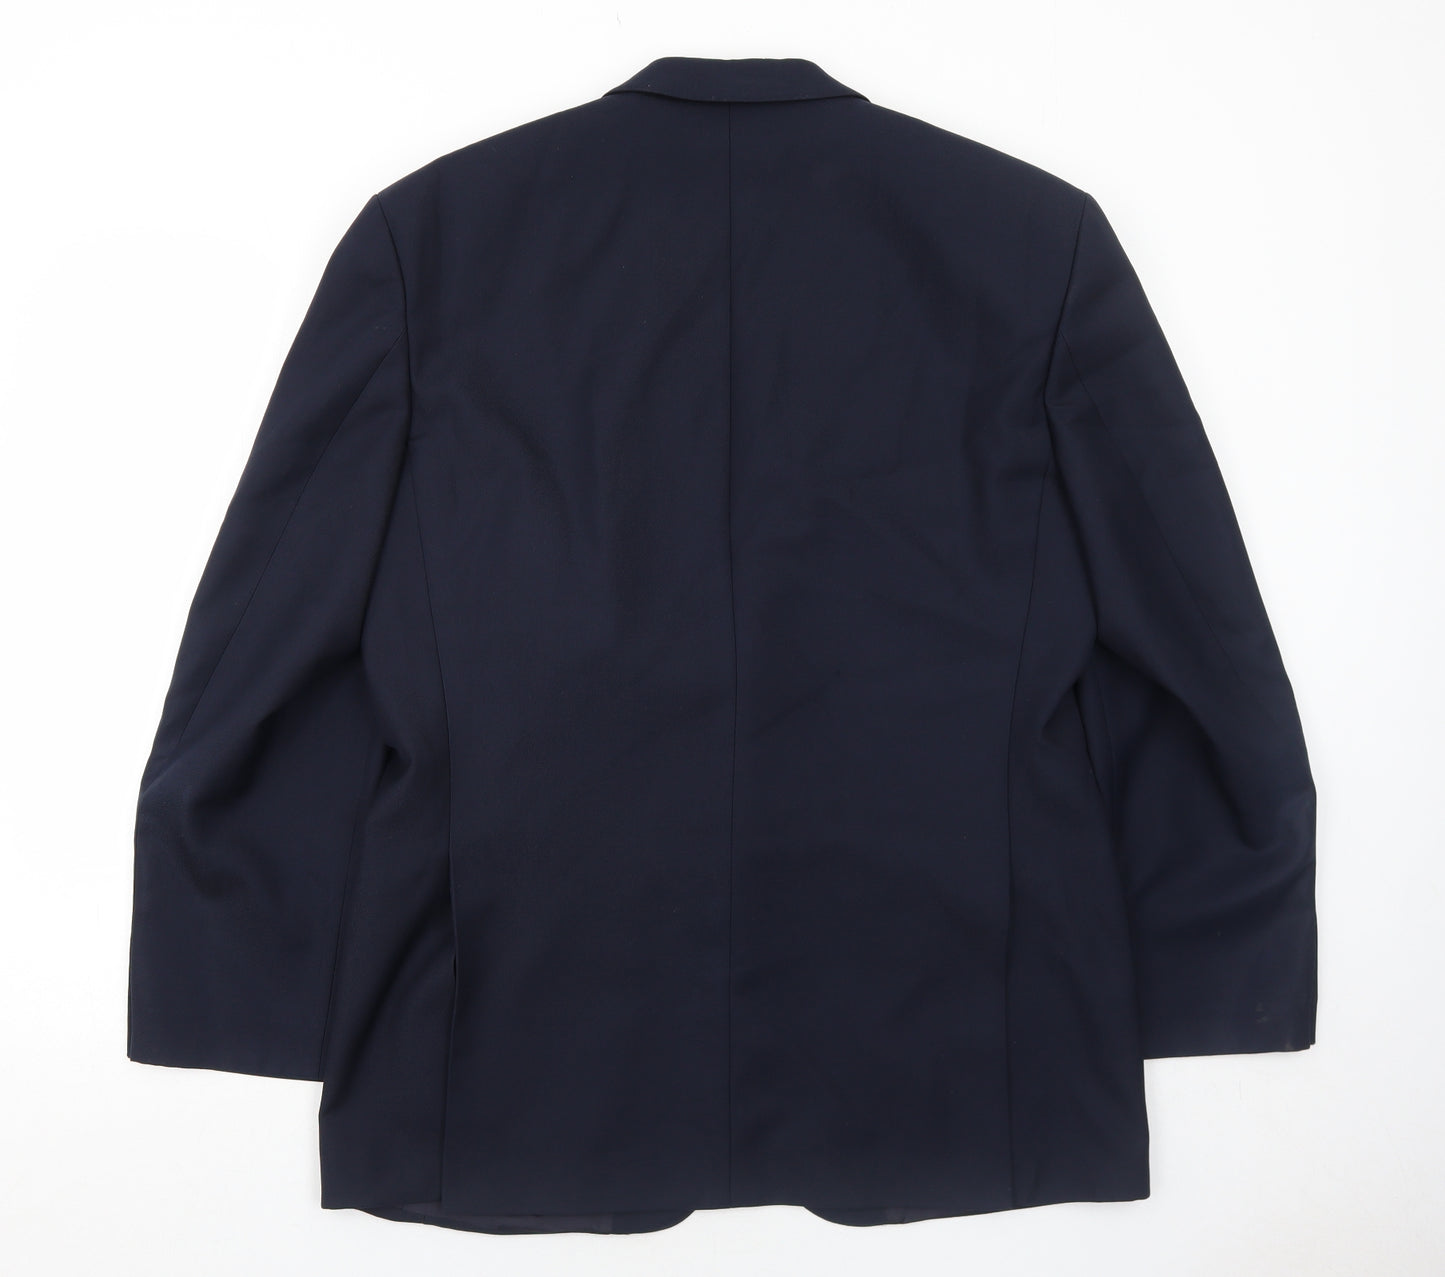 Baulmer Mens Blue Polyester Jacket Suit Jacket Size 44 Regular